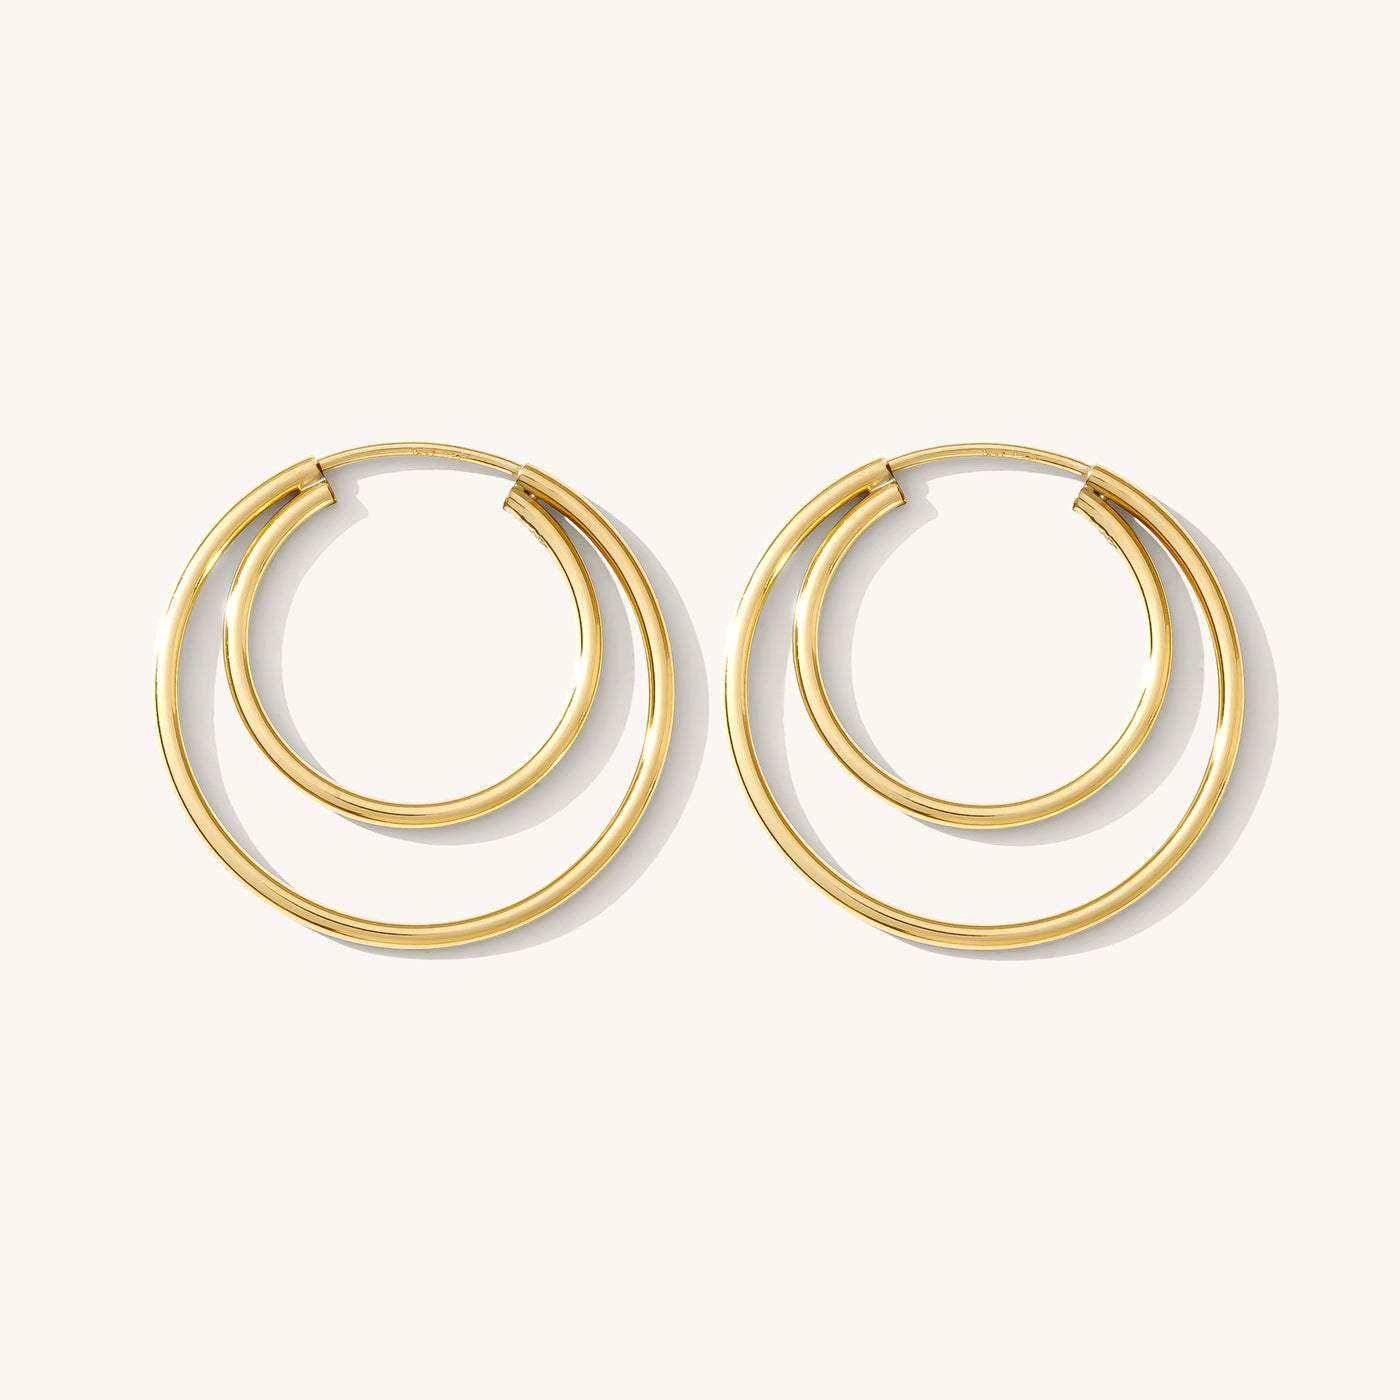 Double Hoop Earrings | Simple & Dainty Jewelry